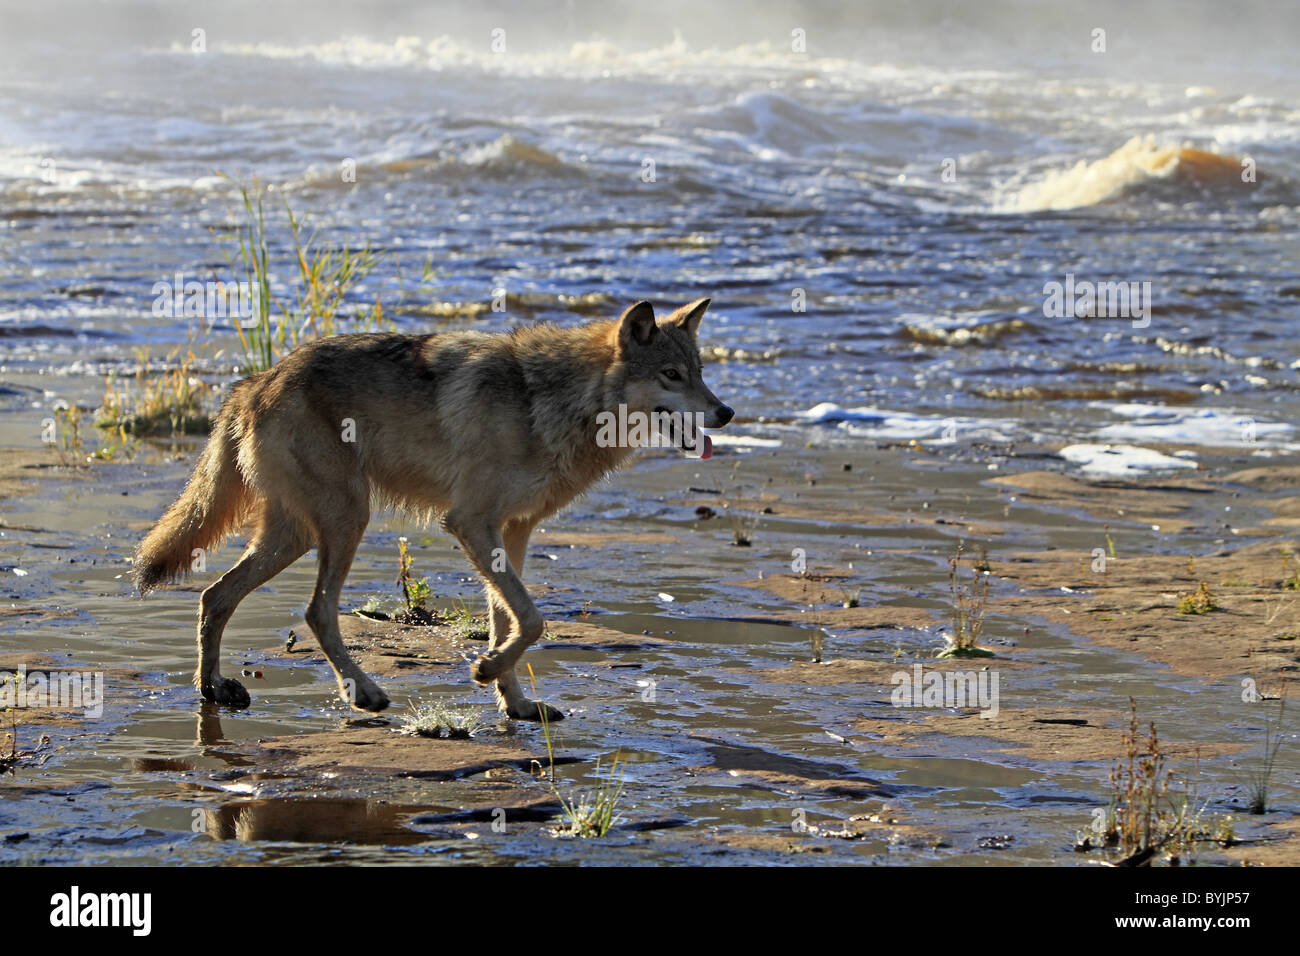 Loup gris, le loup gris (Canis lupus lycaon) marche sur une côte boueuse. Banque D'Images